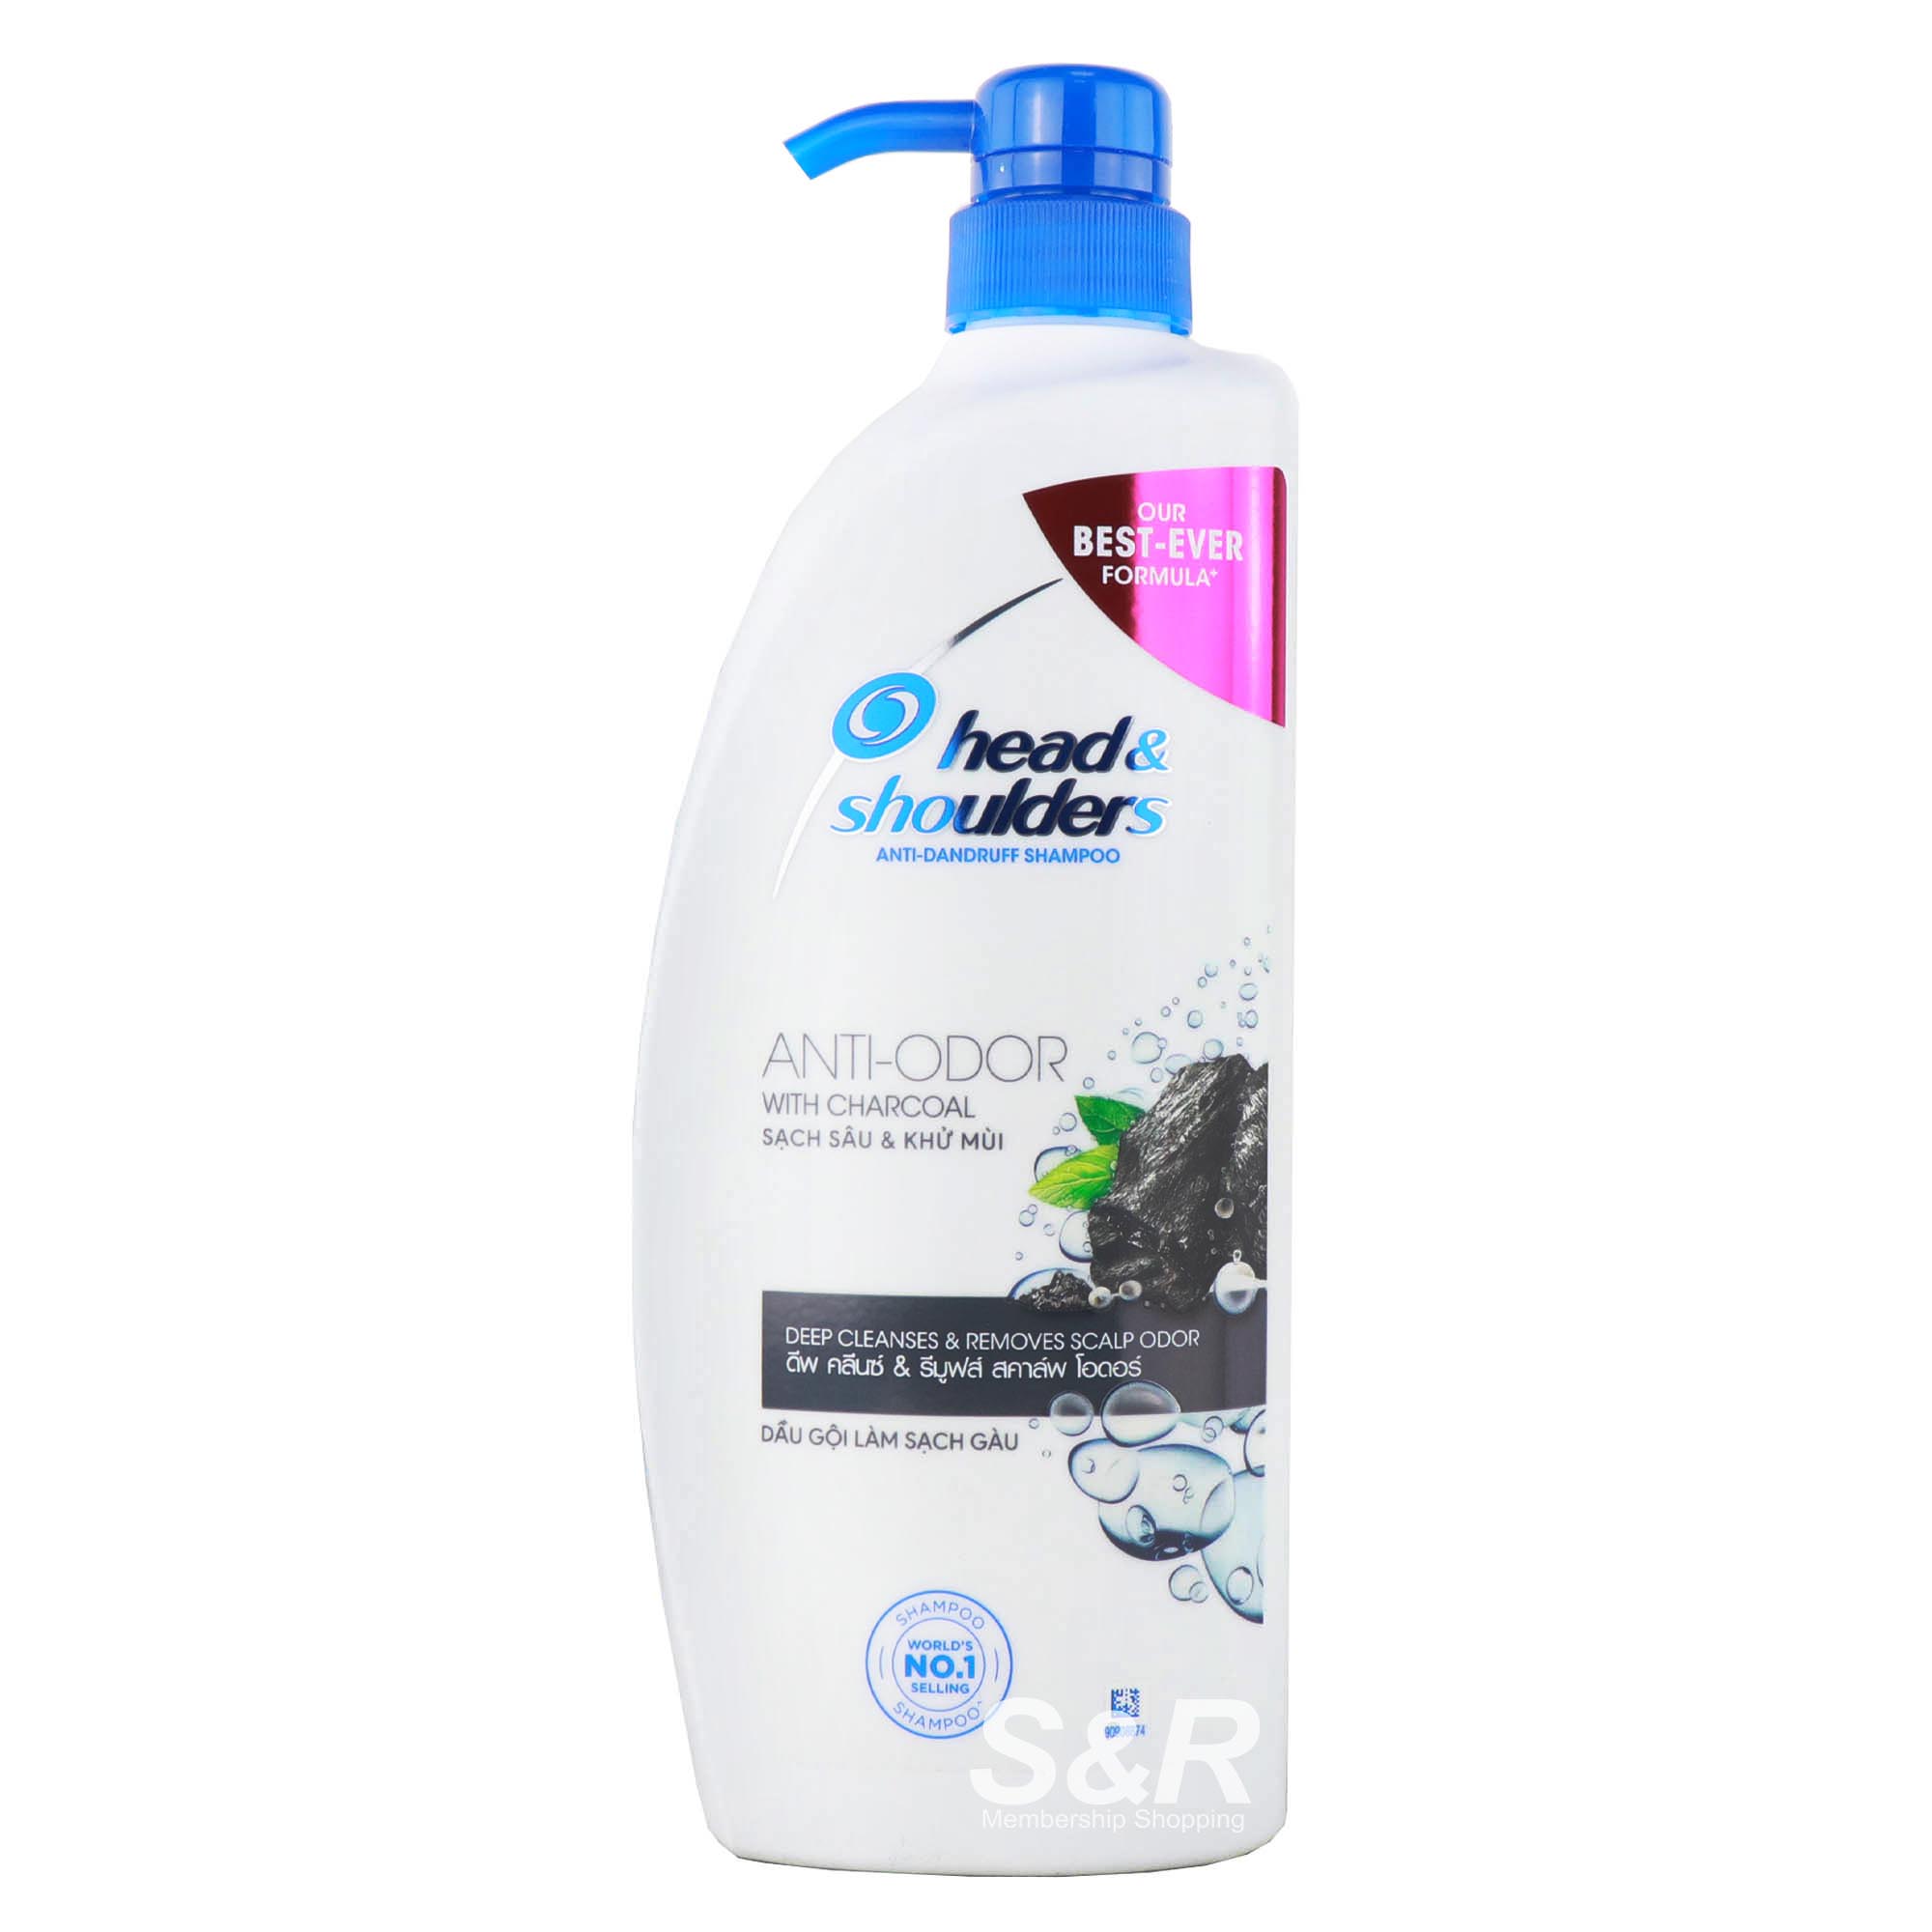 Head & Shoulders Anti-Odor with Charcoal Anti-Dandruff Shampoo 850mL